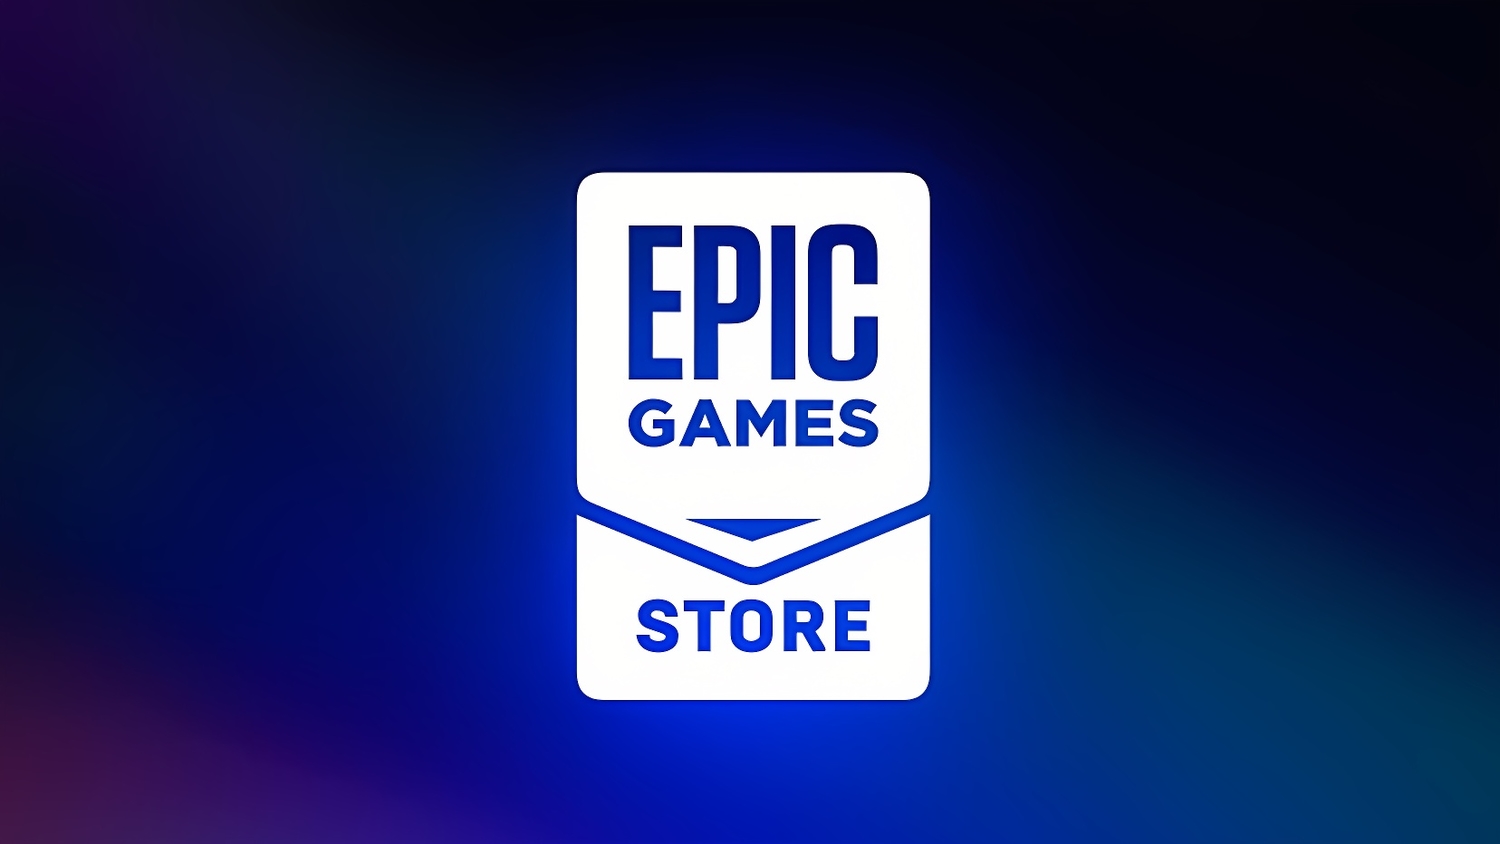 Халява: Epic Games запустила раздачу новой игры и назвала два следующих бесплатных тайтла